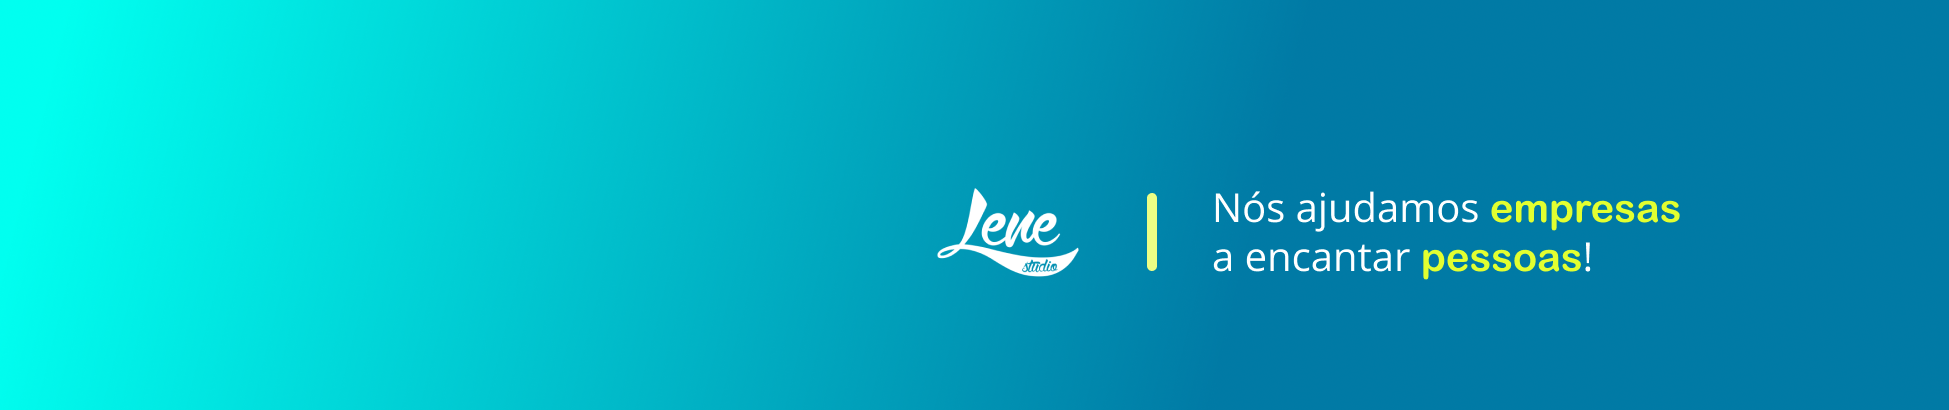 Lene Fernandes's profile banner